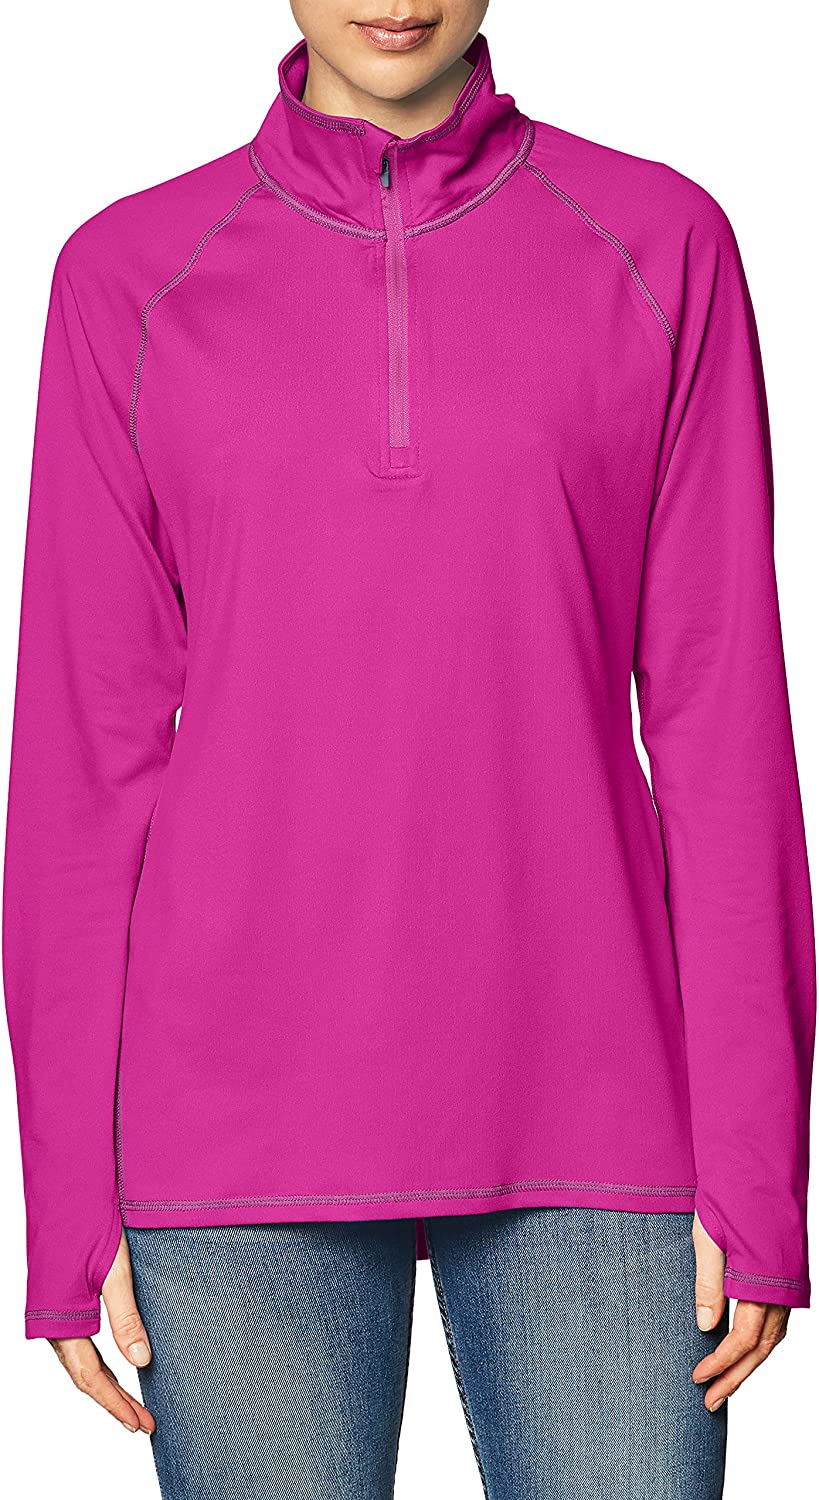 Hanes Women's Sport Performance Fleece Quarter Zip Pullover | eBay